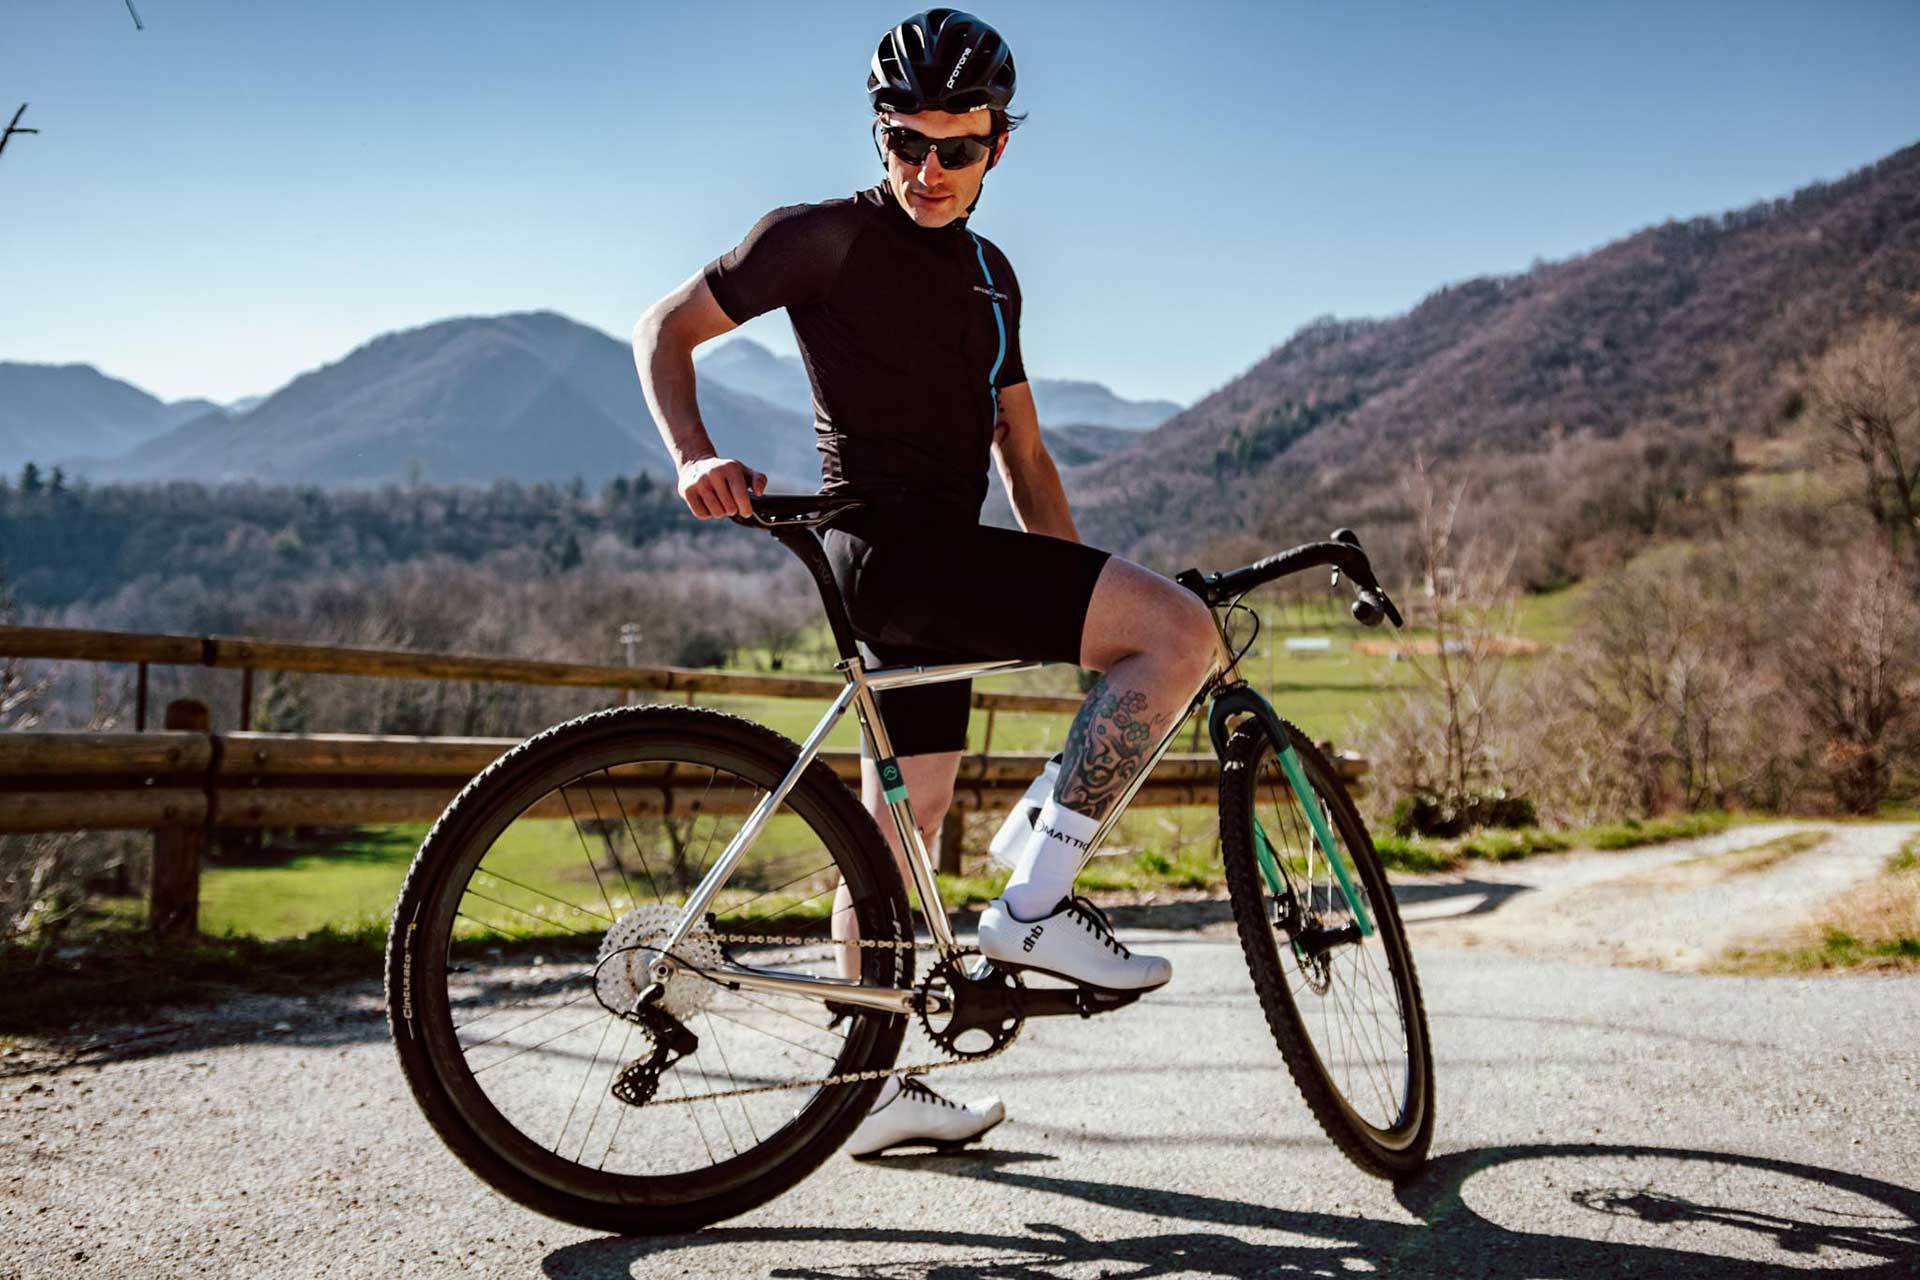 Bicicletta Officine Mattio modello SANTIAGO AC, Gravel in acciaio con geometrie adatte al ciclocross, produzione made in italy ambientata 01